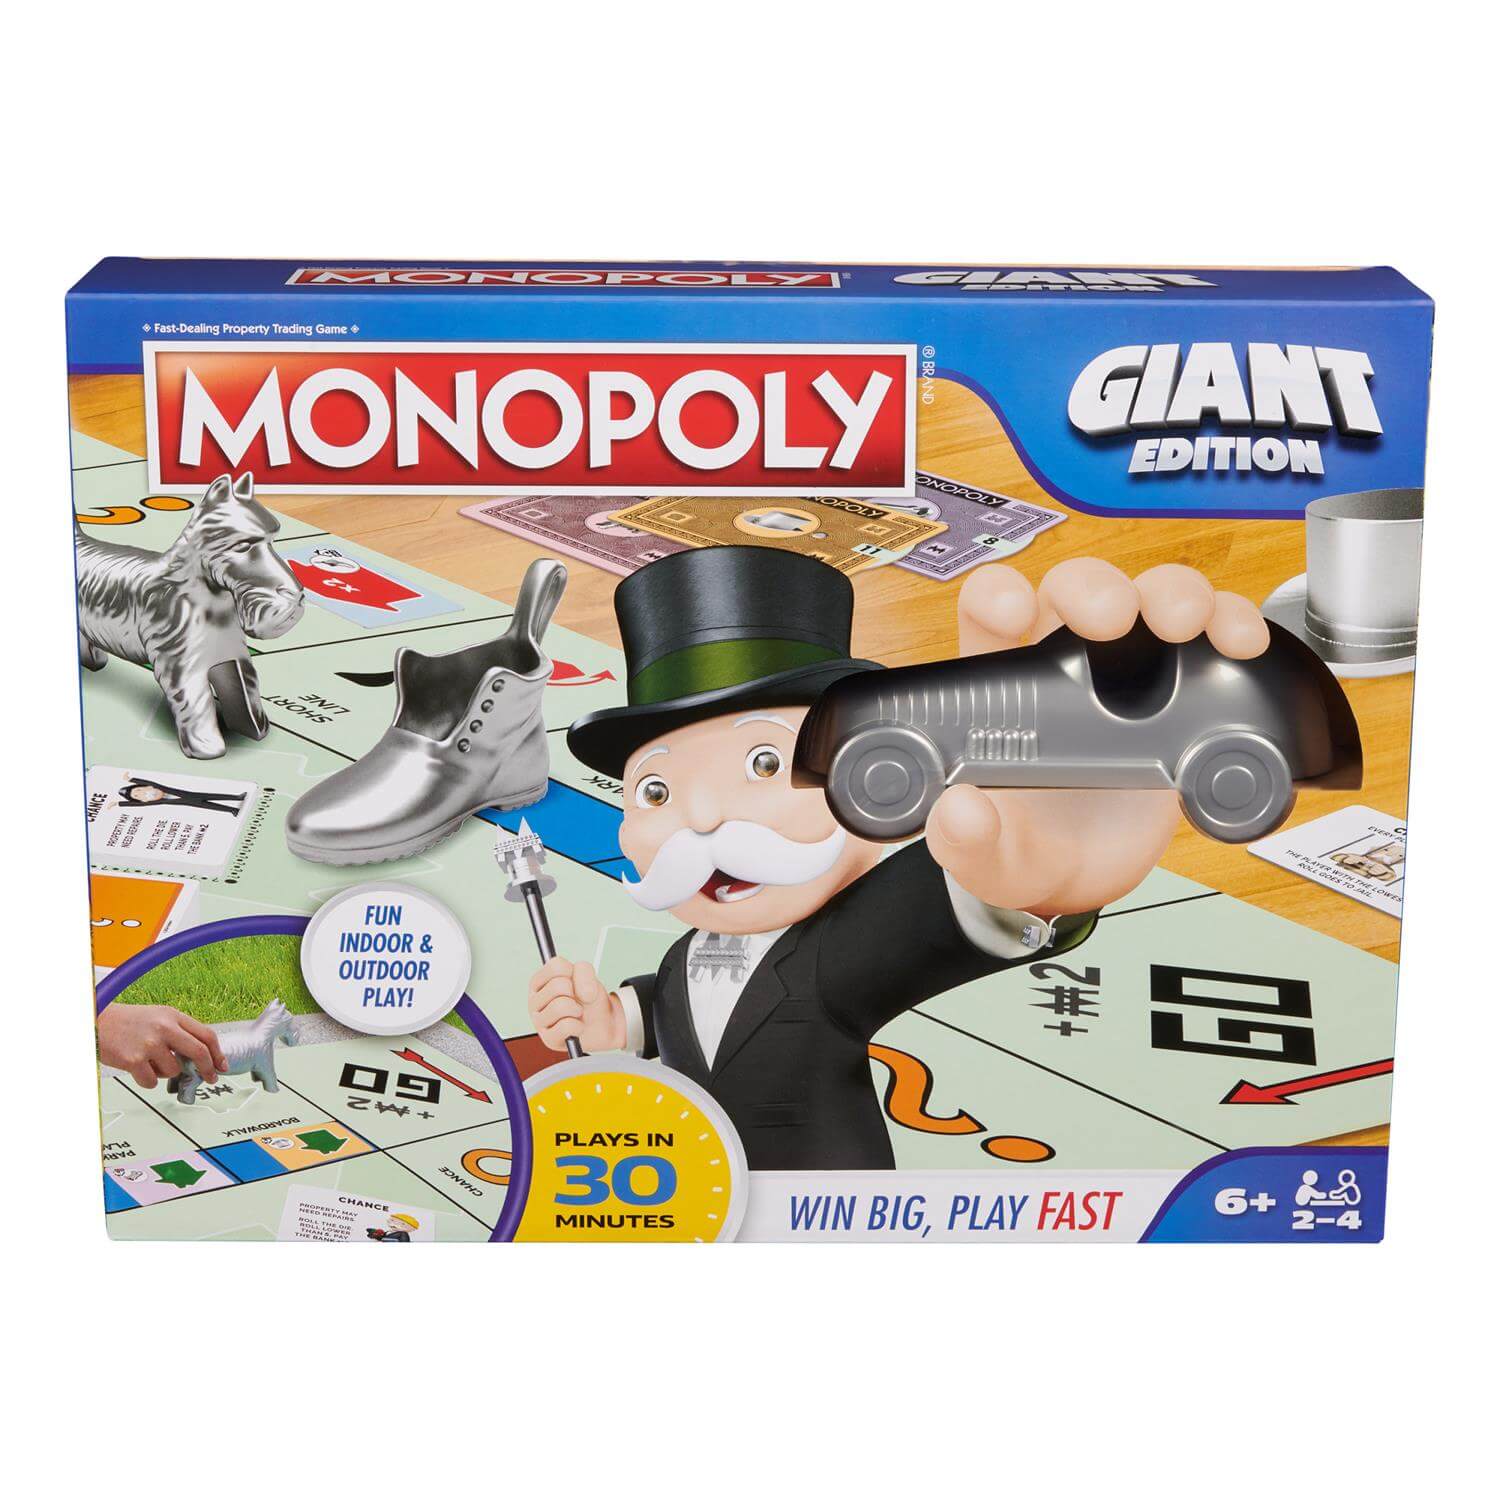 Giant Monopoly